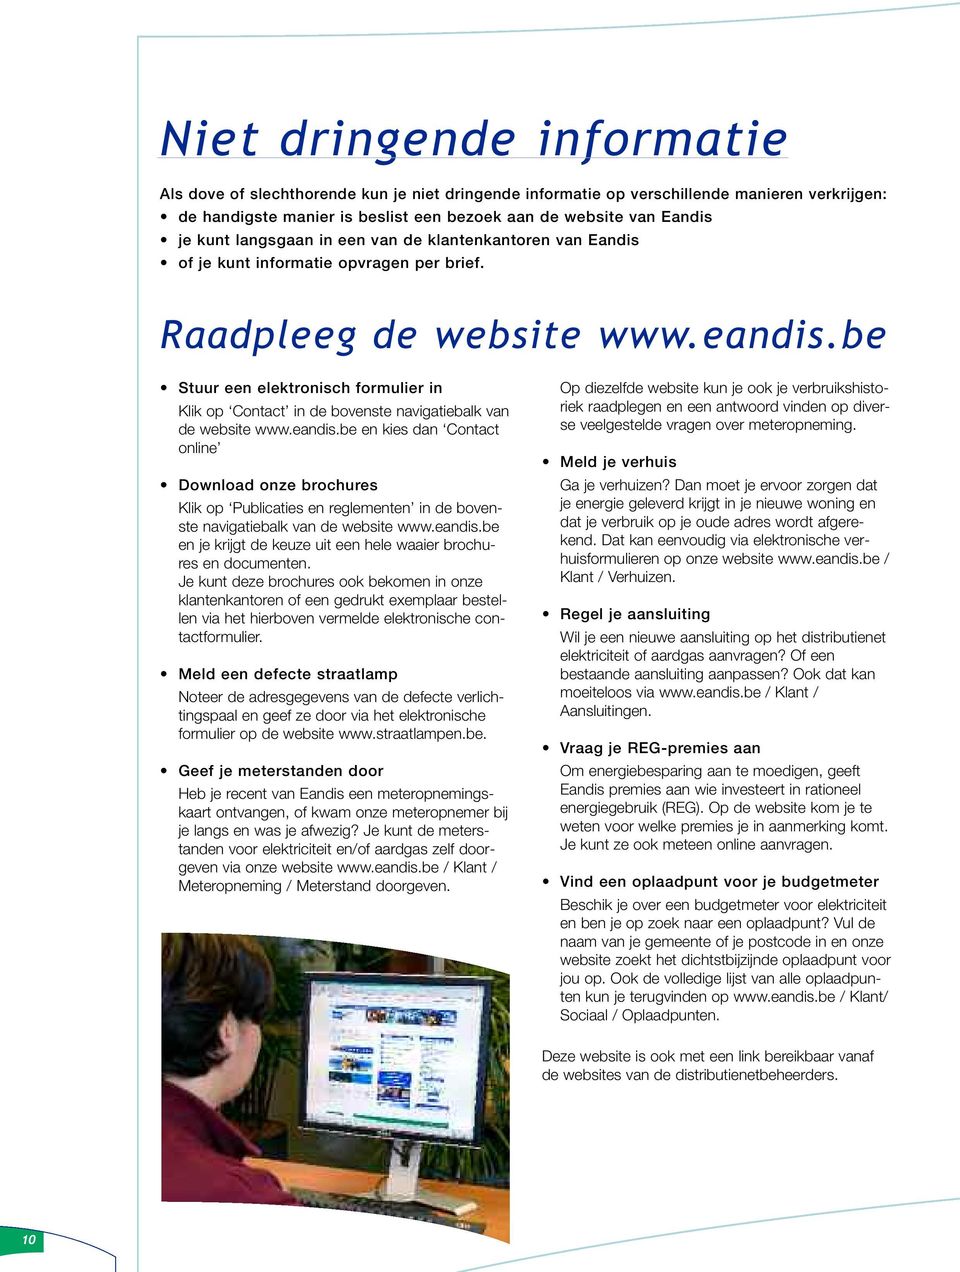 be Stuur een elektronisch formulier in Klik op Contact in de bovenste navigatiebalk van de website www.eandis.